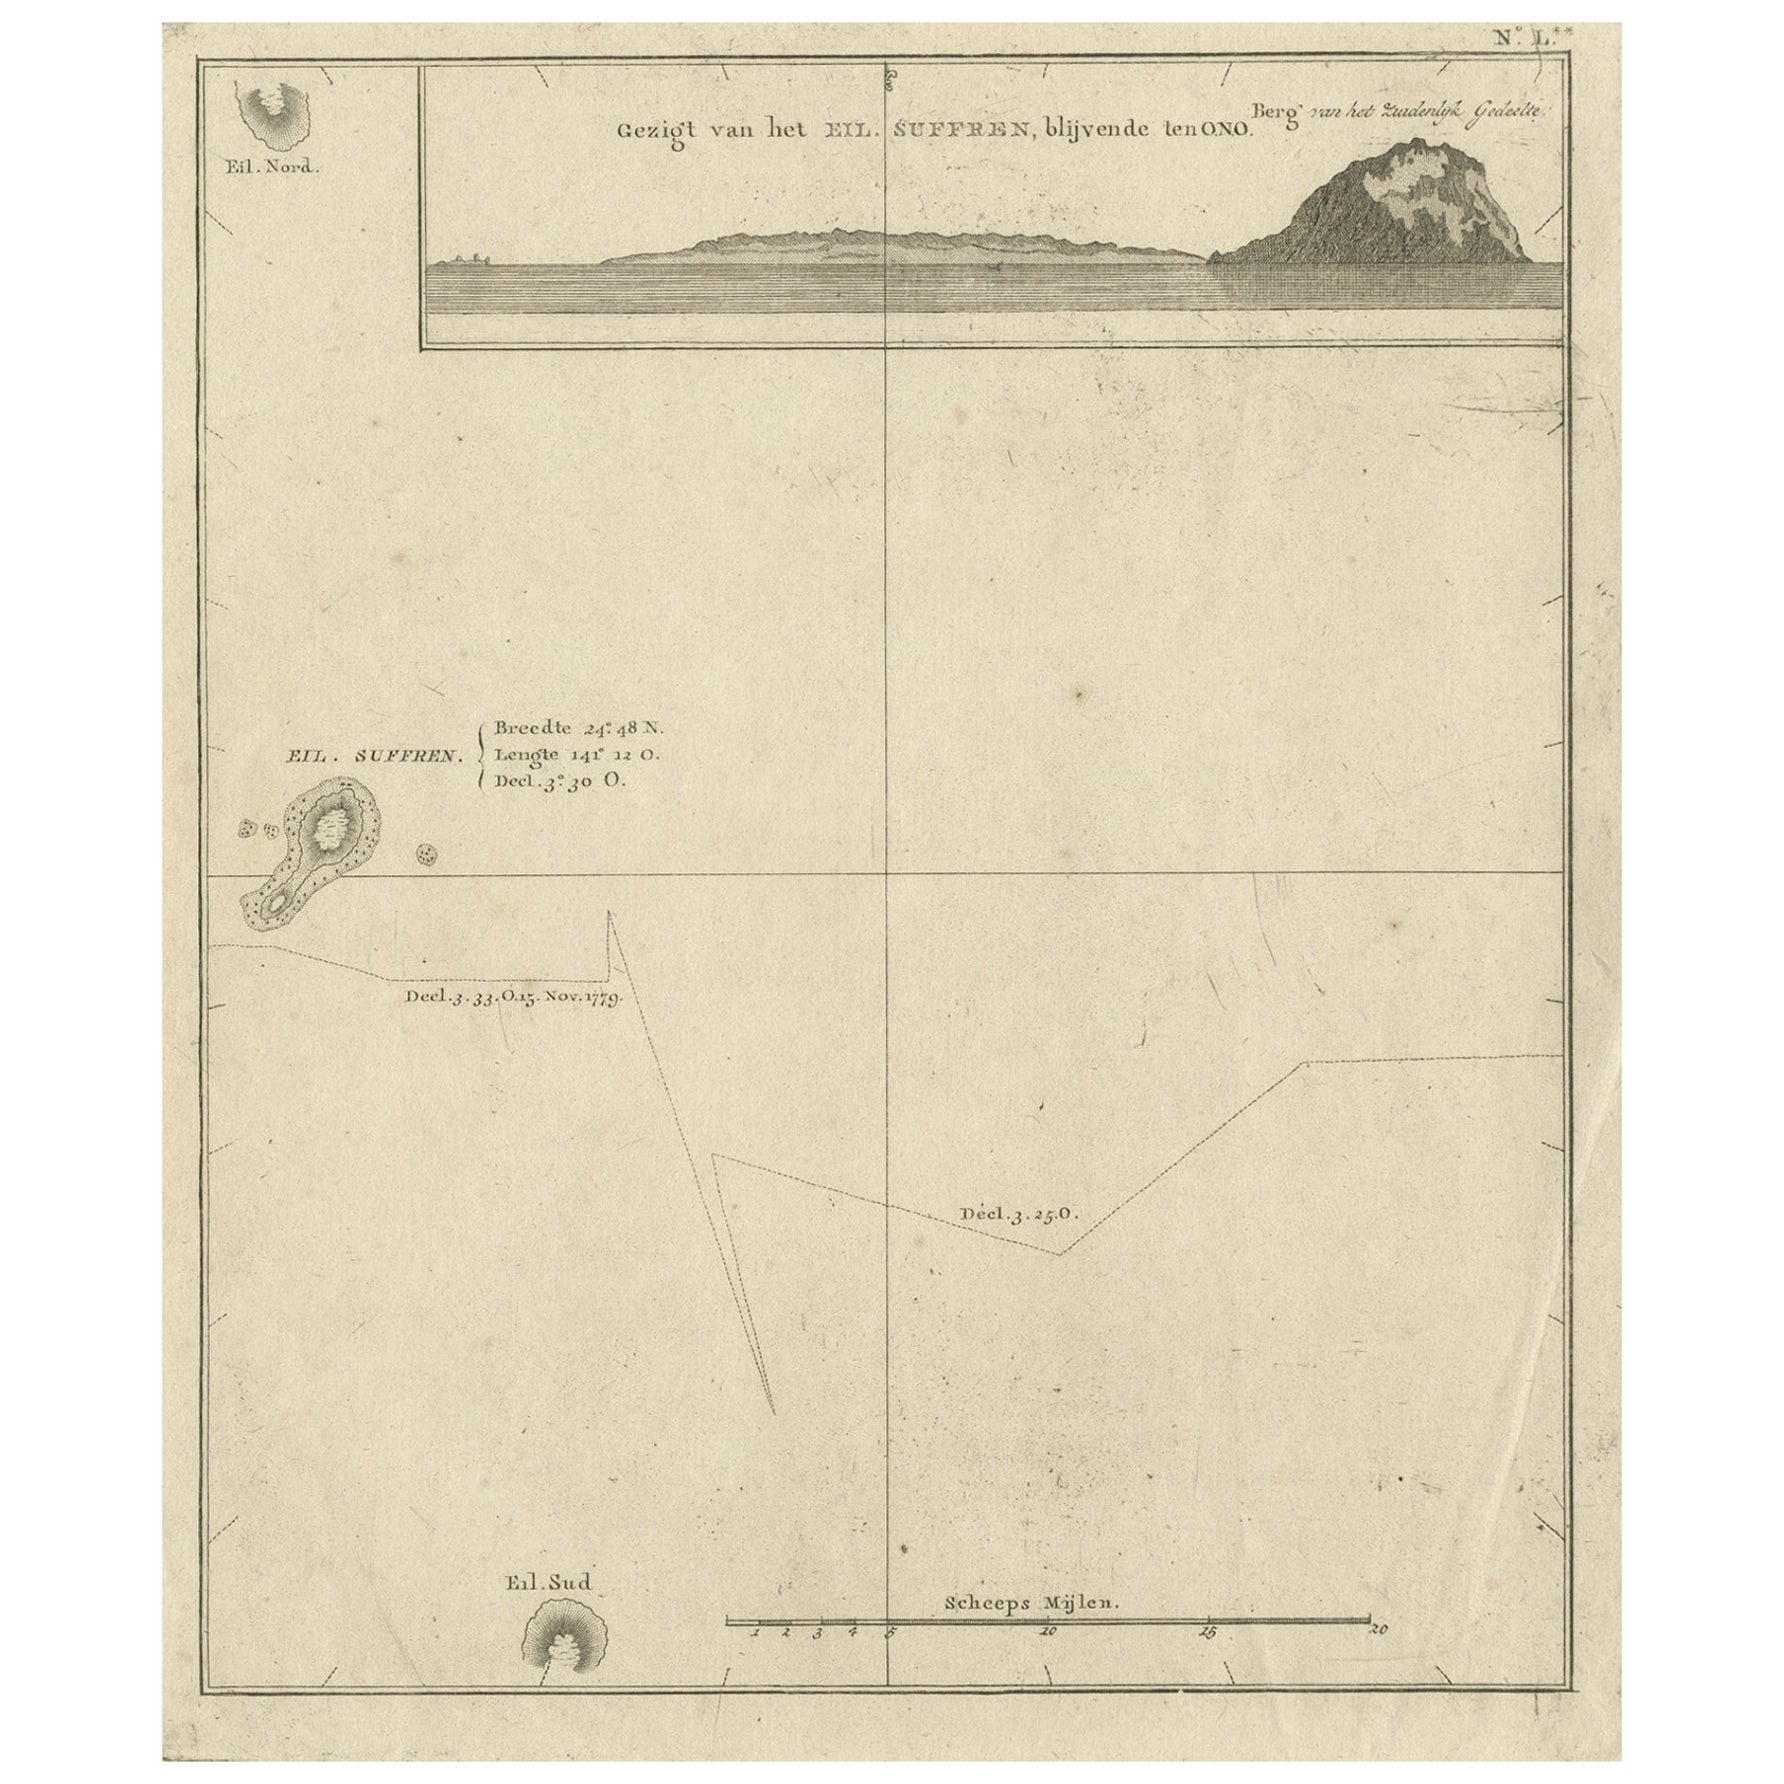 Antike Karte der Suffren-Insel von Cook, 1803